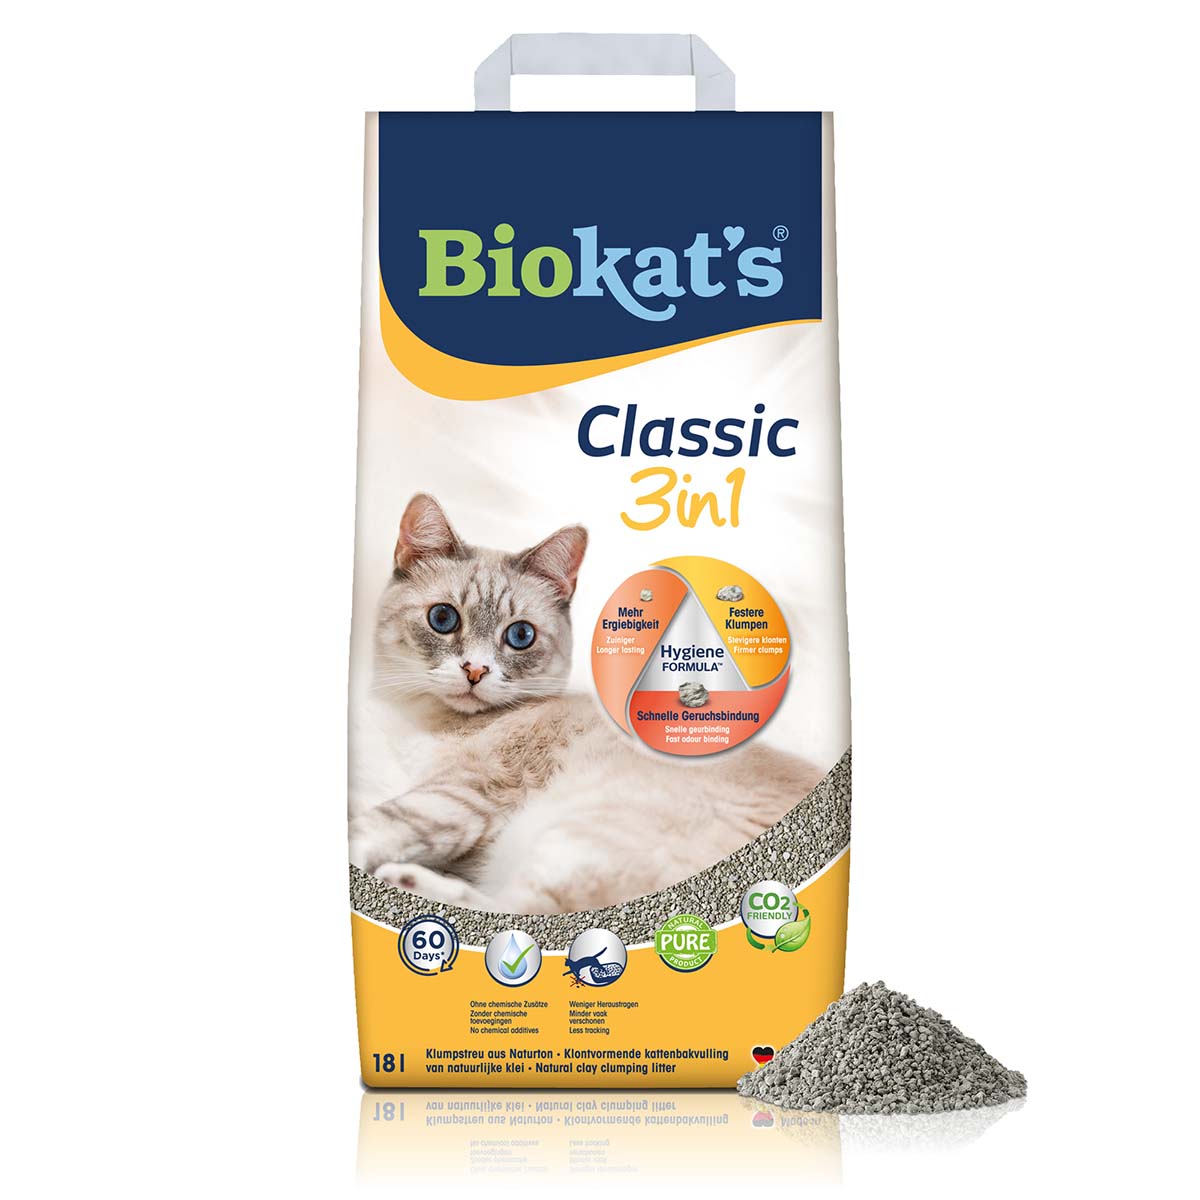 Biokat's Classic 3in1 18l von BioKat's